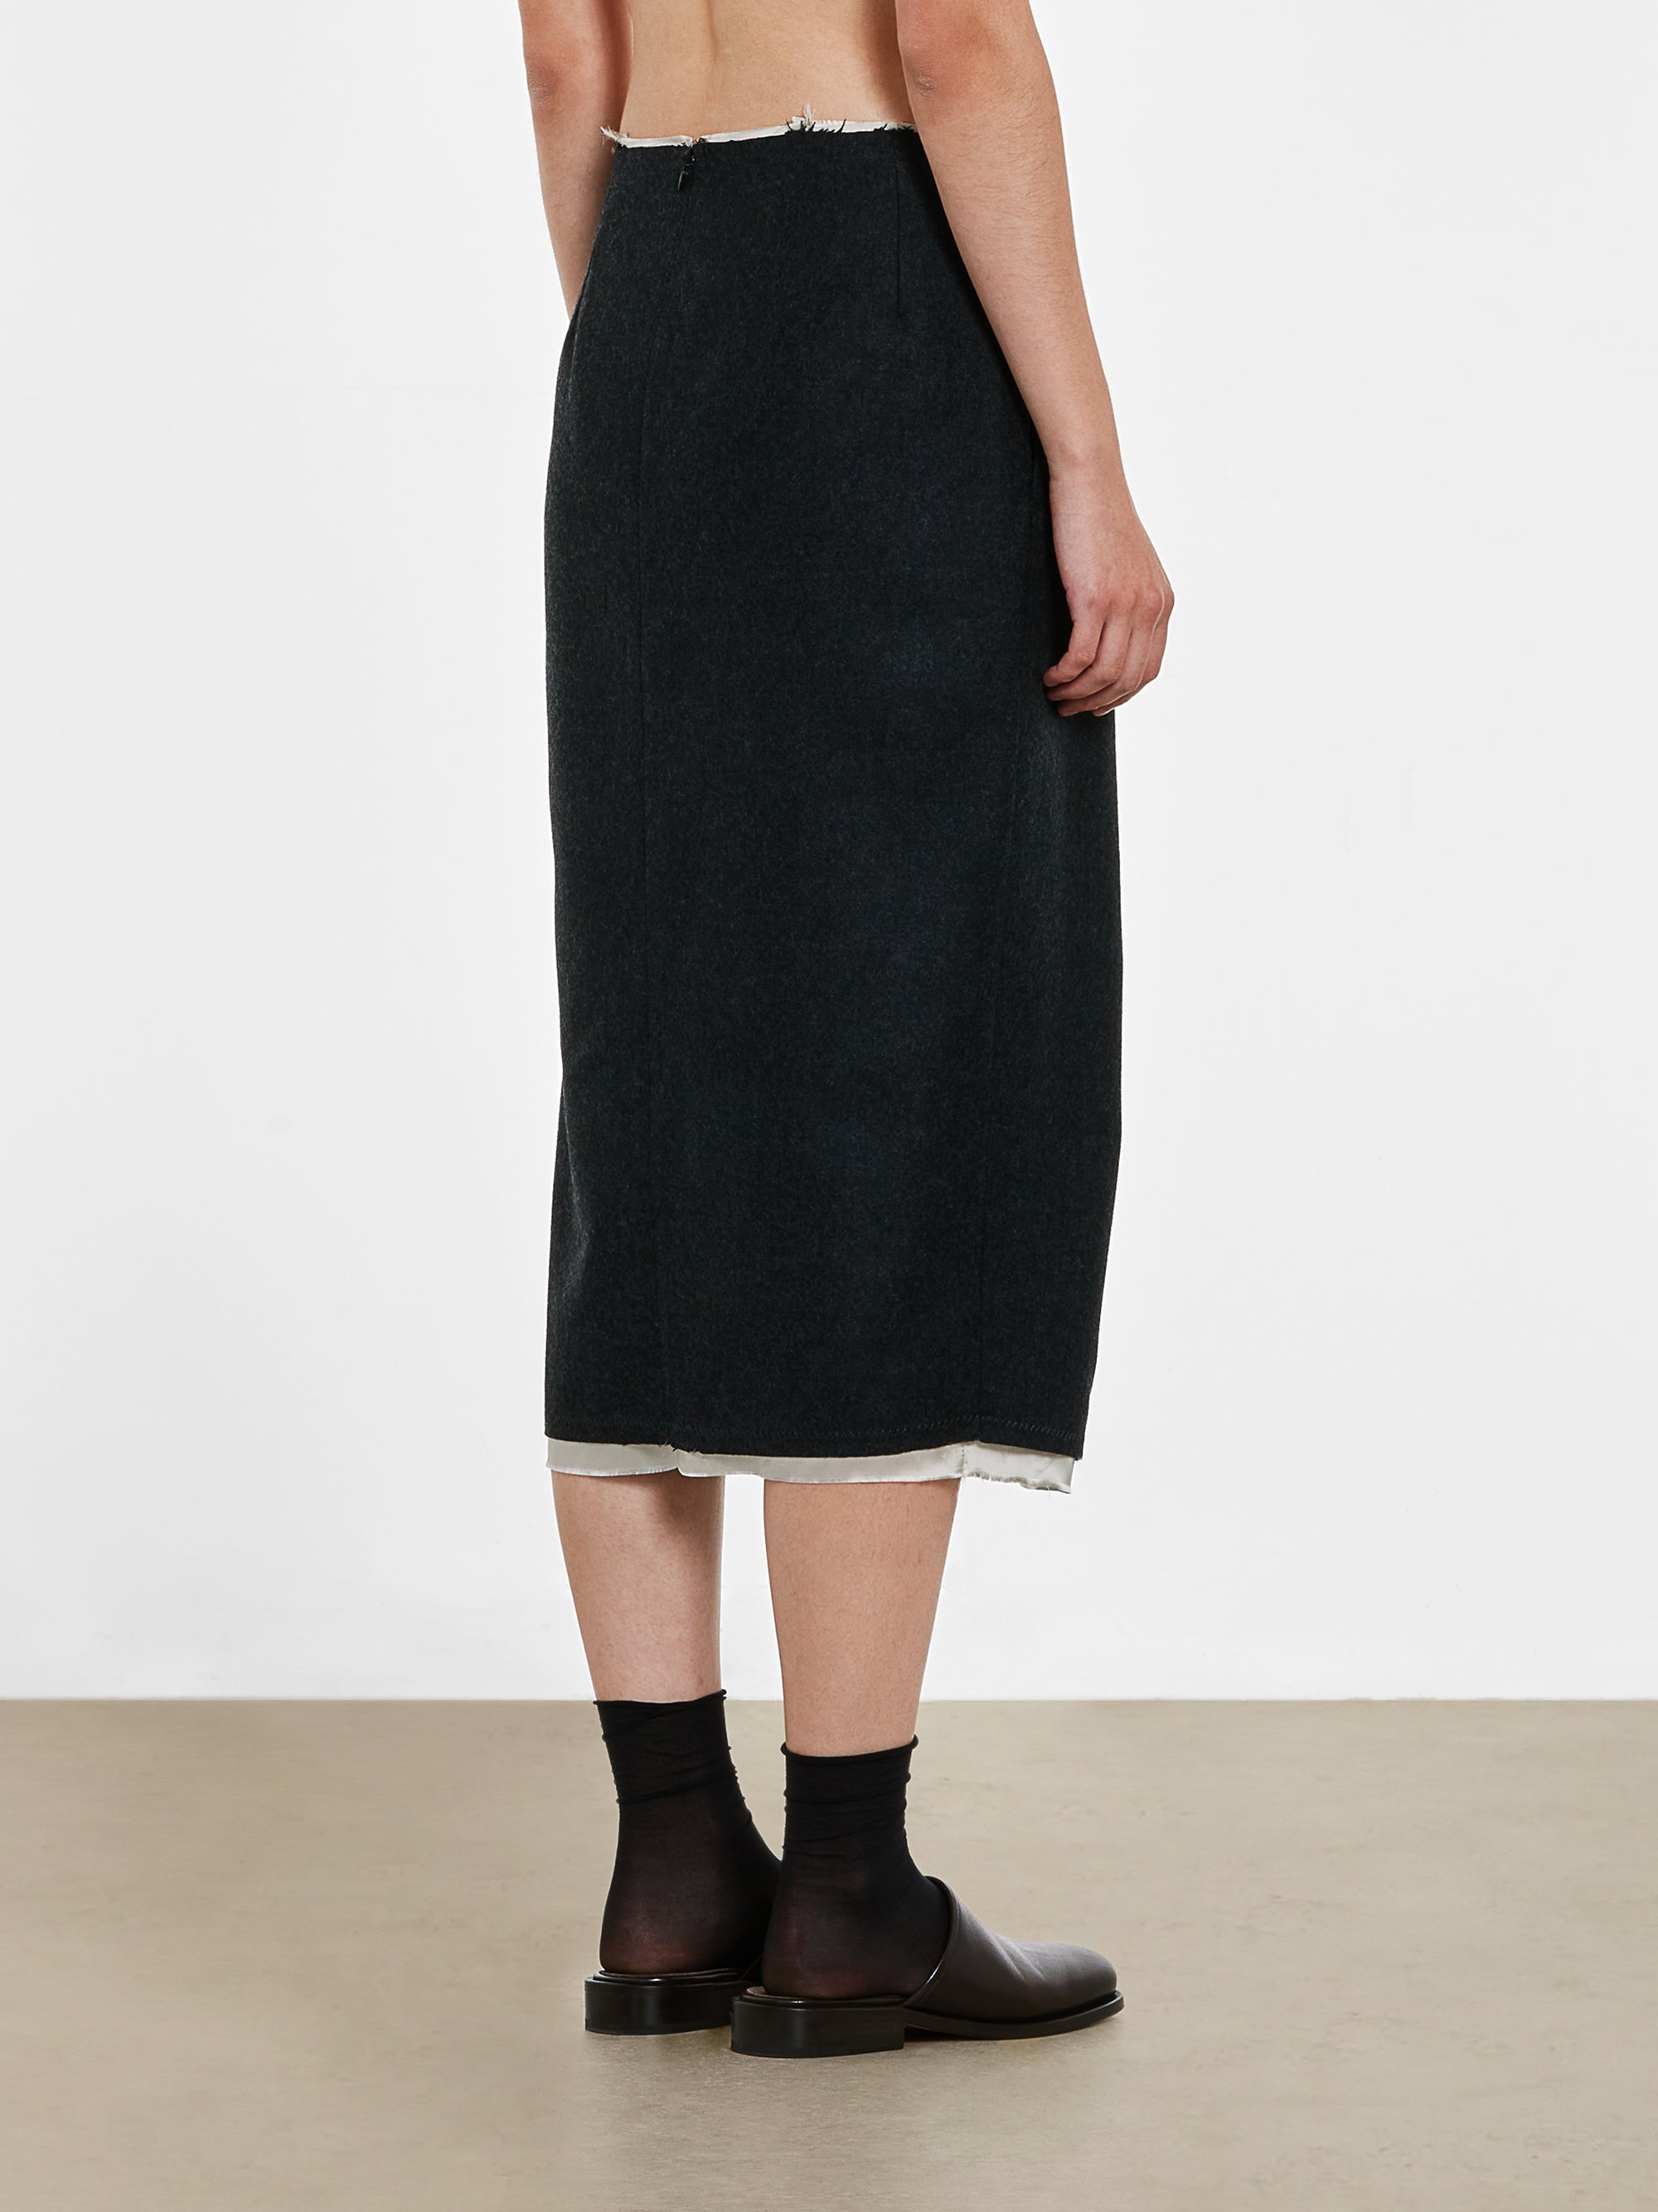 Dries Van Noten - Women’s Front Slit Skirt - (Anthracite) view 4